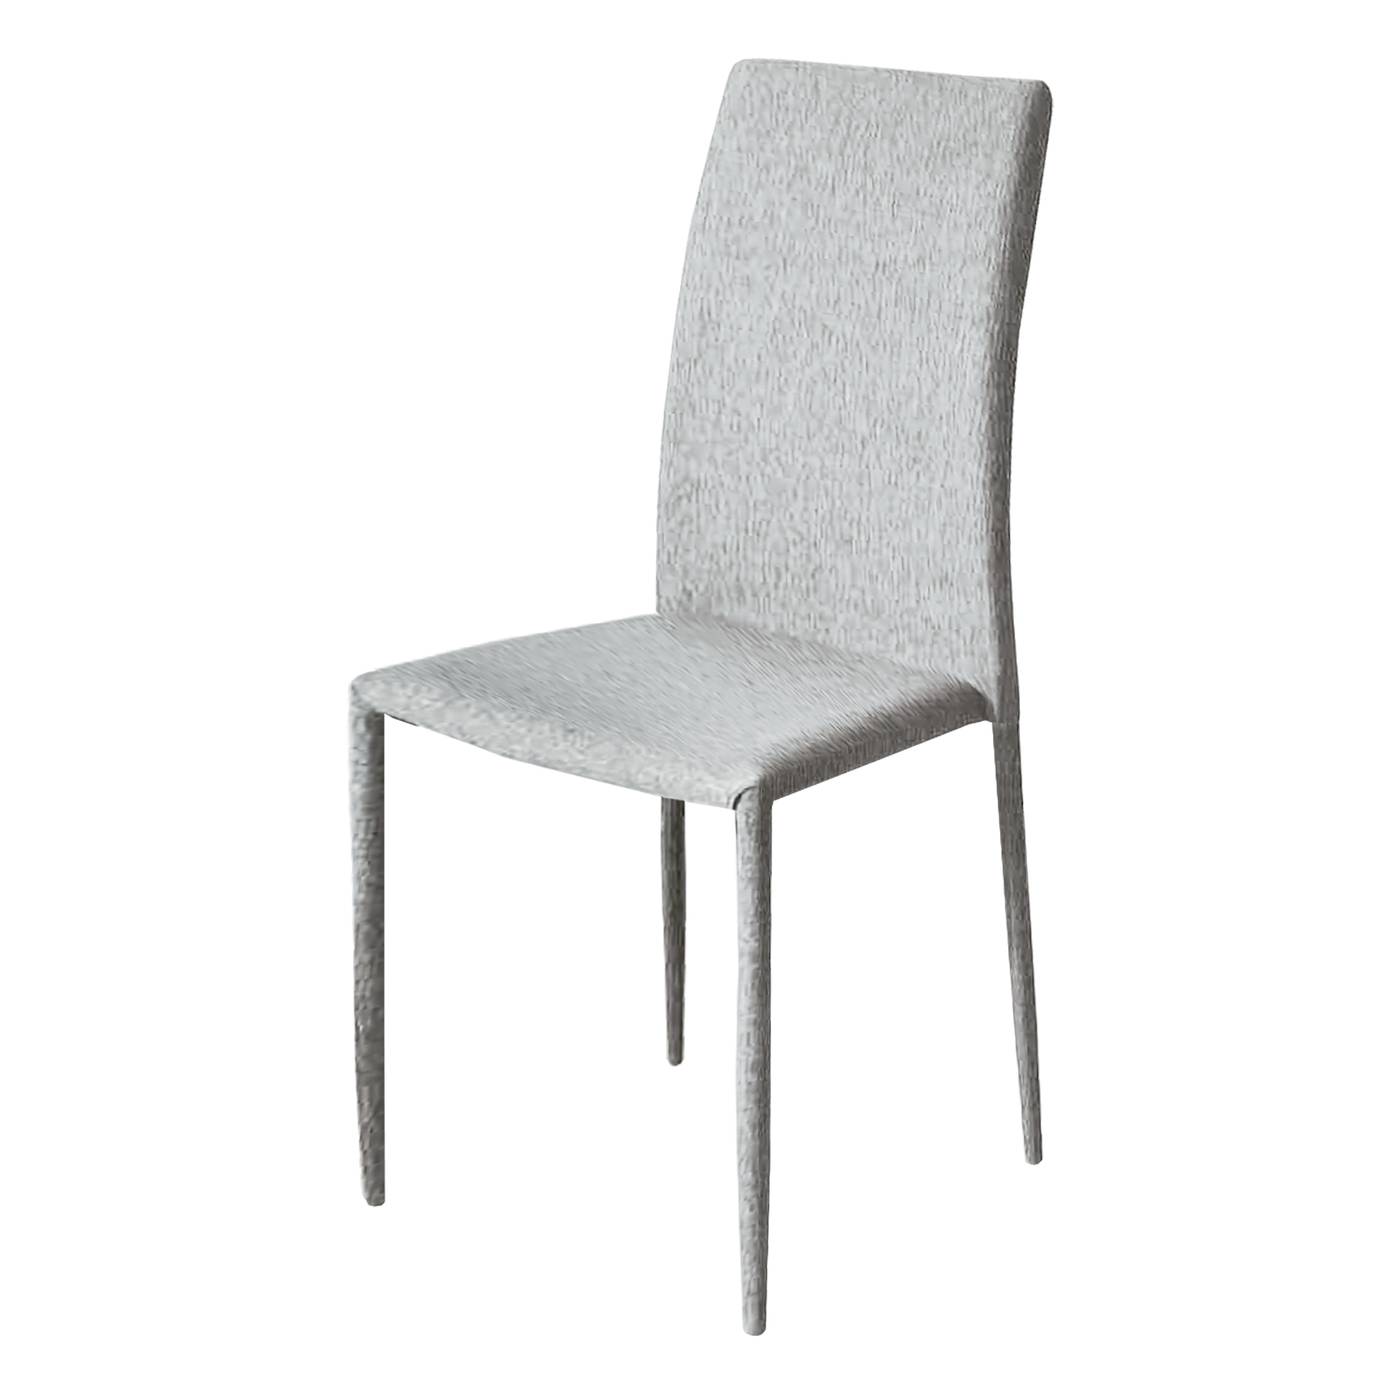 Pack 4 sillas de comedor apilables, con respaldo y asiento acolchado tapizados con tela color gris perla.